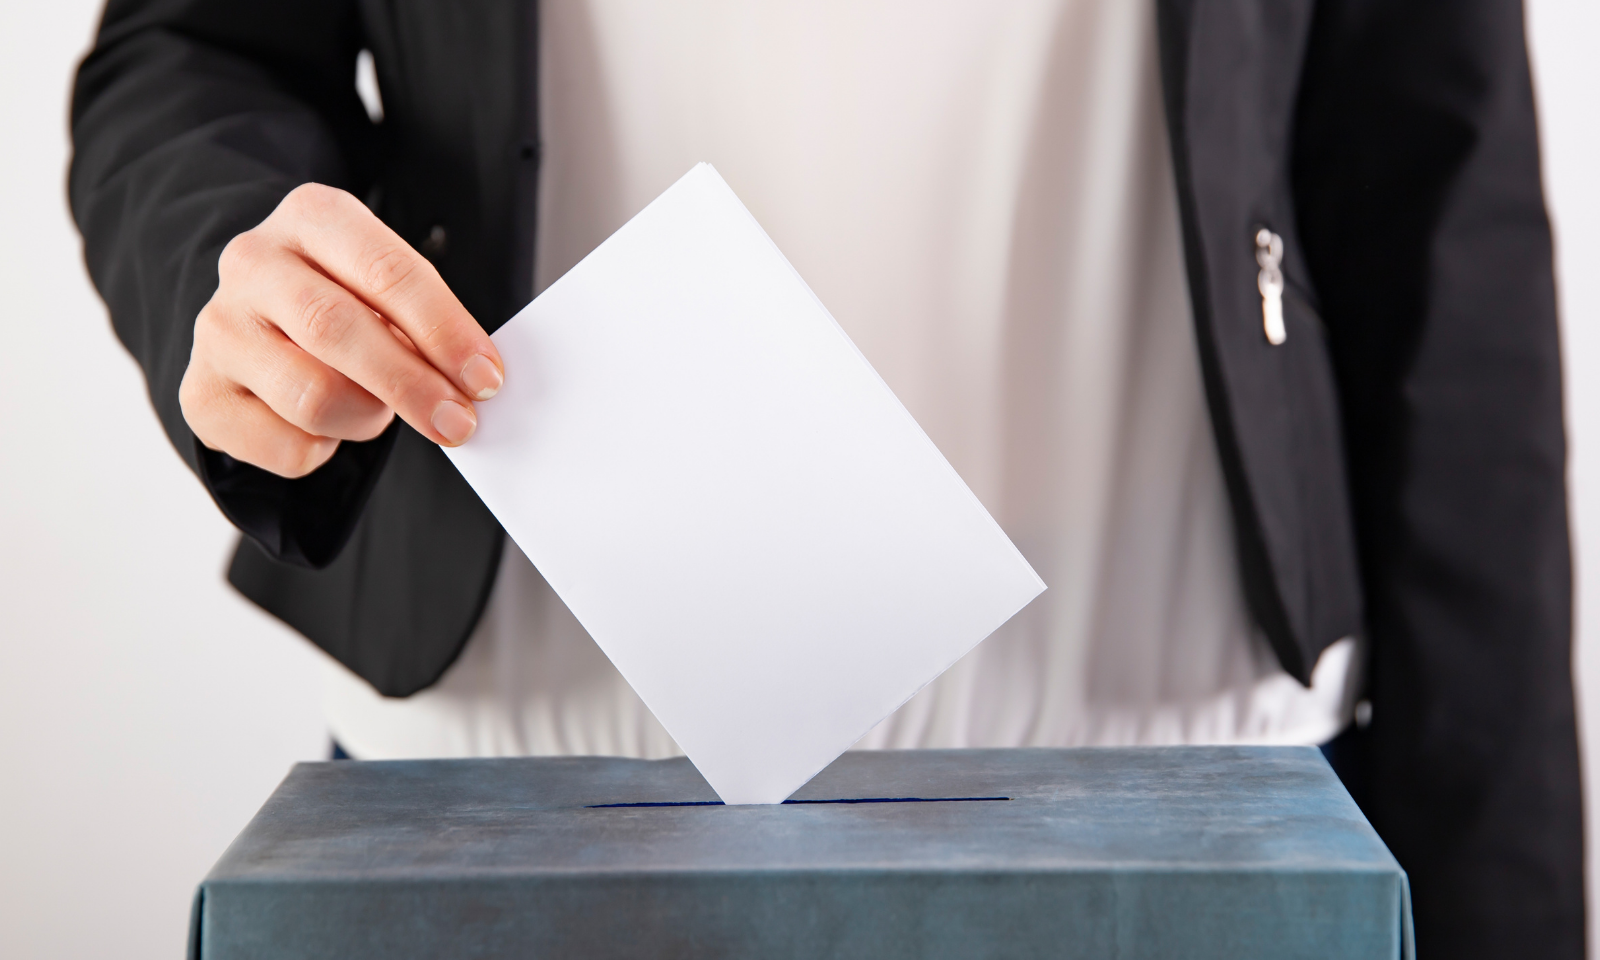 Eleições Autárquicas: A Importância de Exercer o Nosso Direito ao Voto